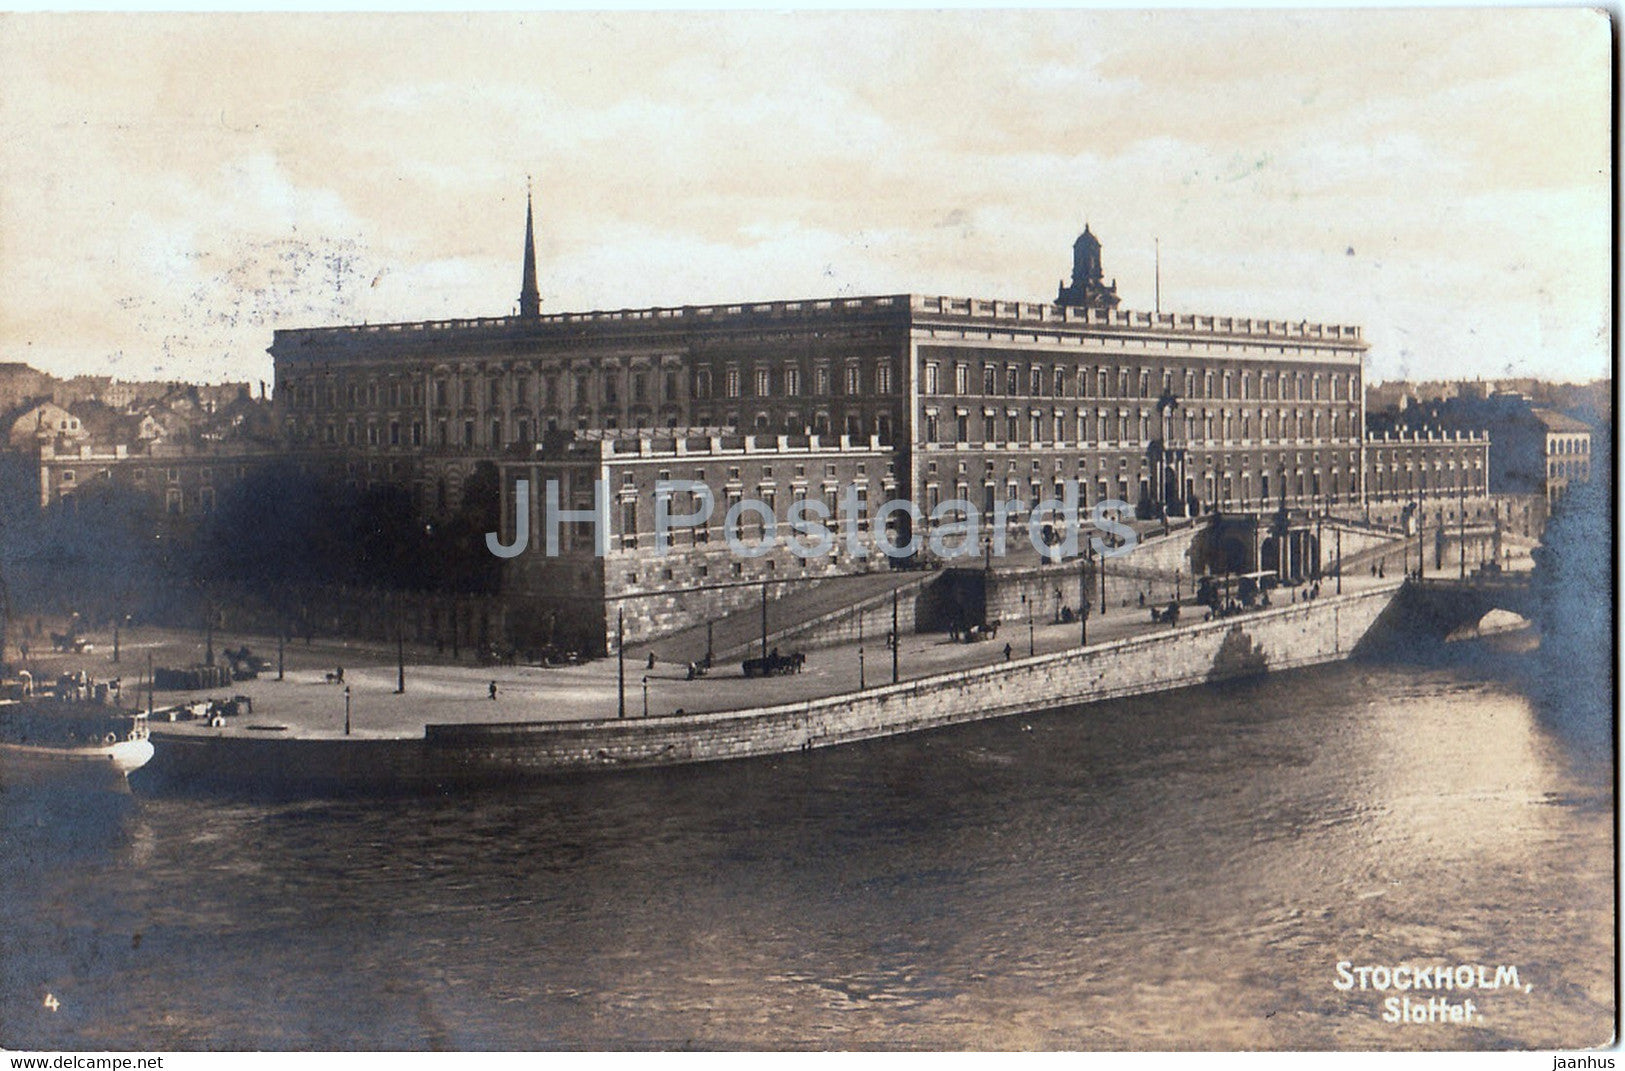 Stockholm - Slottet - castle - 4 - old postcard - 1923 - Sweden - used - JH Postcards